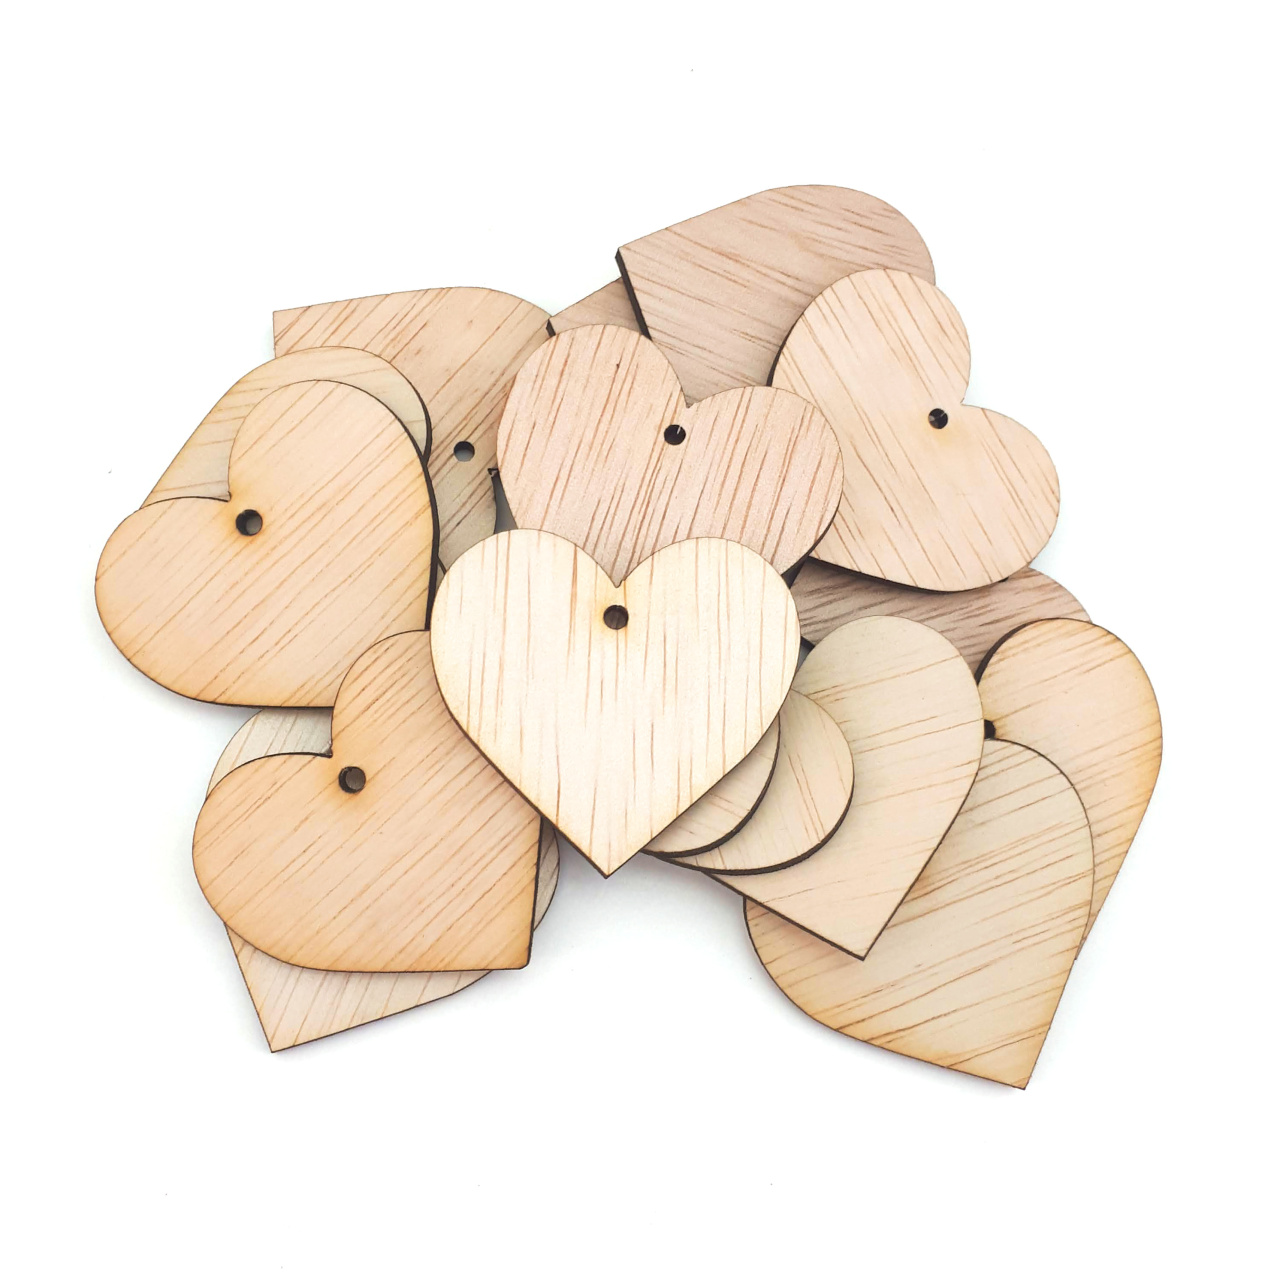 Inimă, 5,5×5 cm, placaj lemn natur :: 5 cm